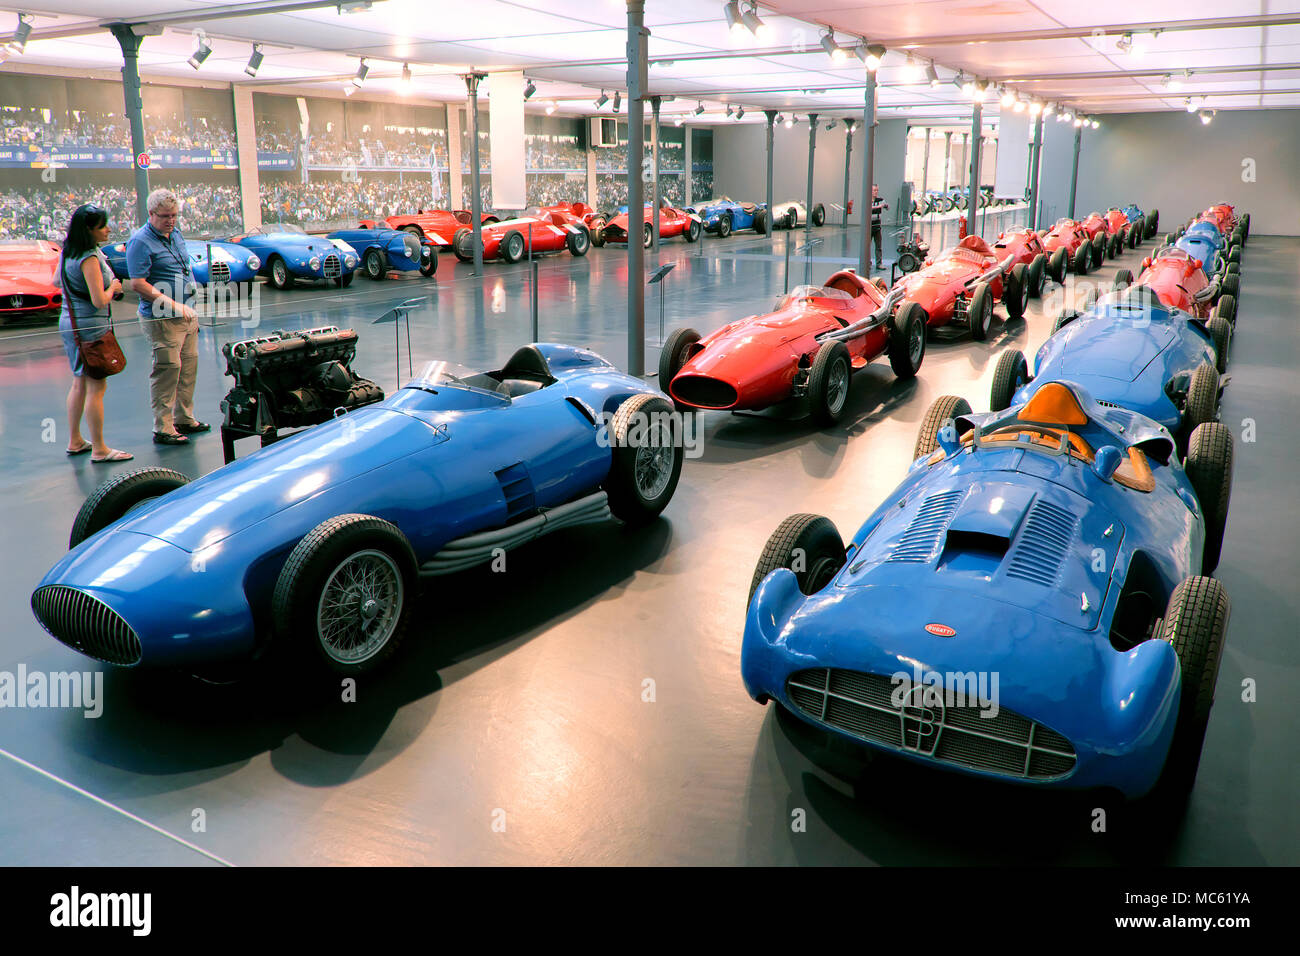 Row of Bugatti cars, Cité de l'Automobile / Automobile Museum, Mulhouse, Alsace, France Stock Photo